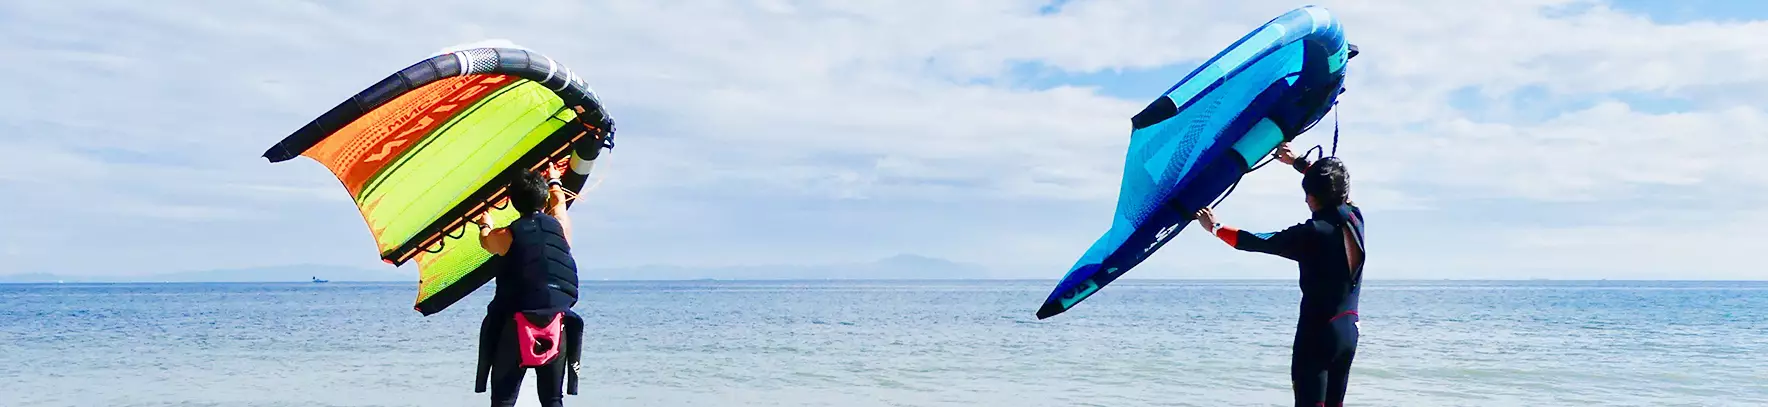 湘南の海でマリンスポーツを楽しむ。江ノ島フォイルサーフィン体験